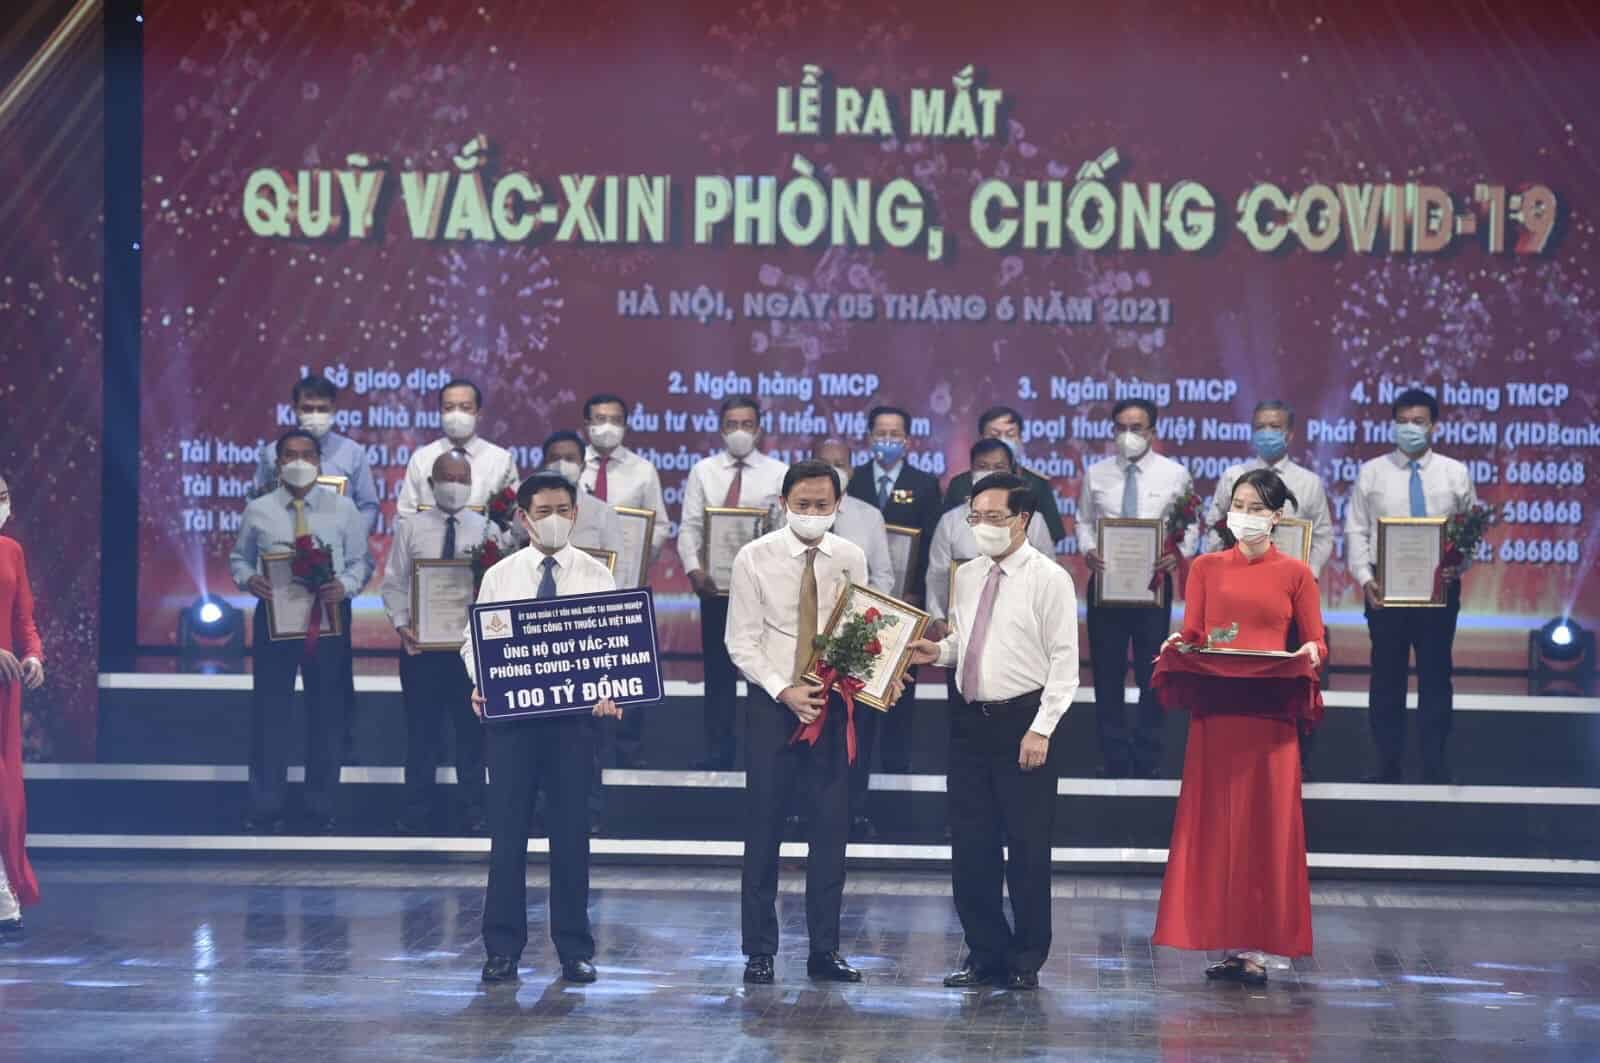 Chủ tịch HĐTV Hồ Lê Nghĩa đại diện Tổng công ty trao tặng Quỹ vaccine  phòng, chống Covid-19 Việt Nam số tiền ủng hộ 100 tỷ đồng